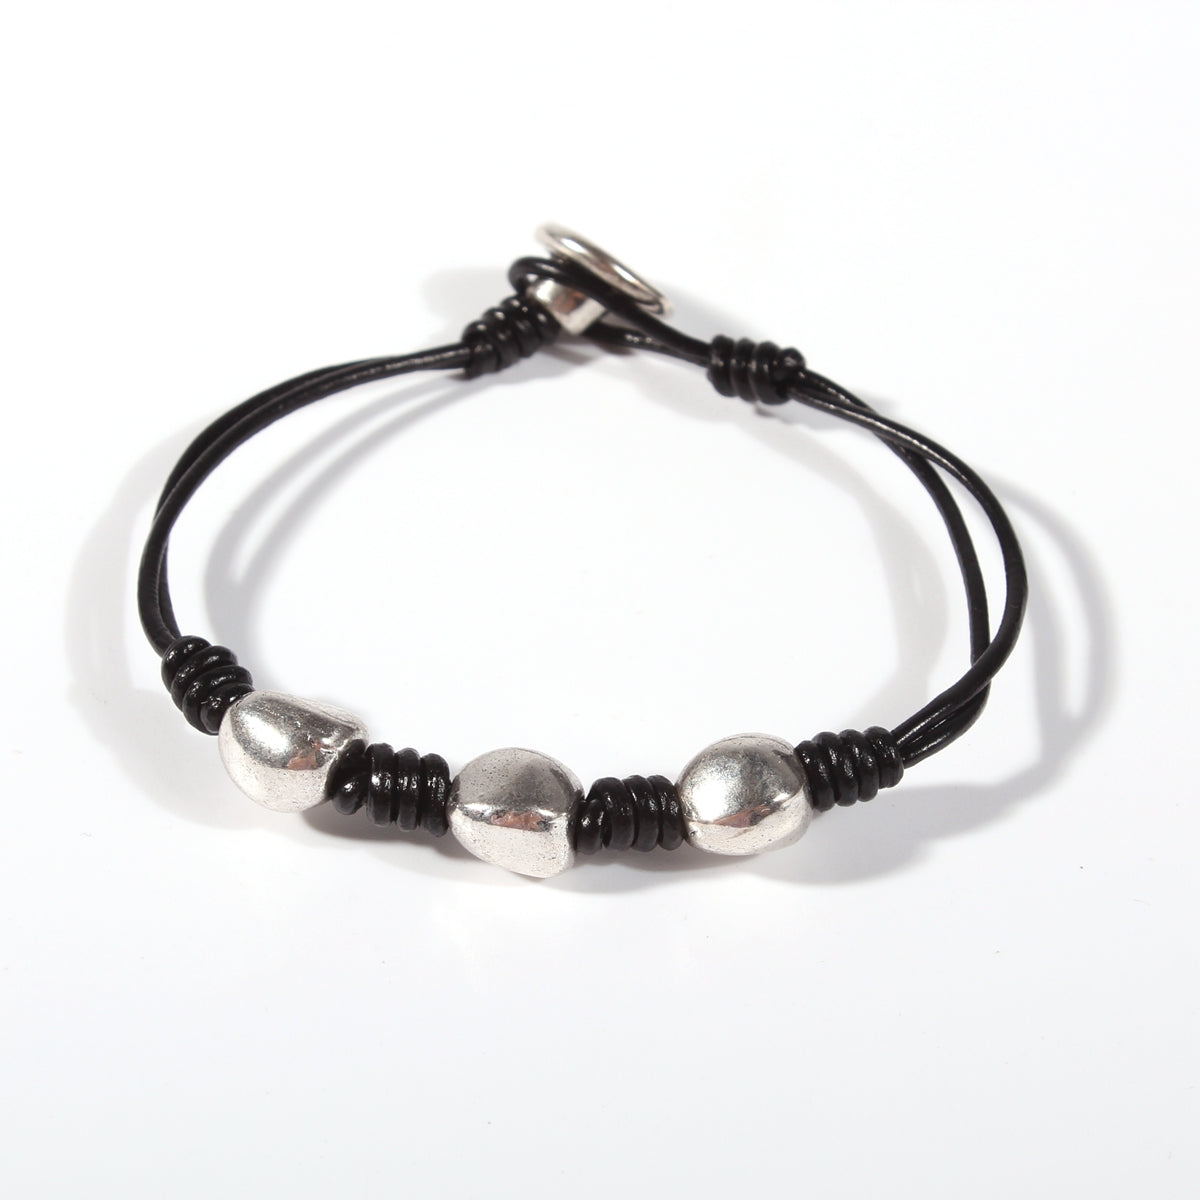 Genuine leather handmade women's bracelet MBR-03